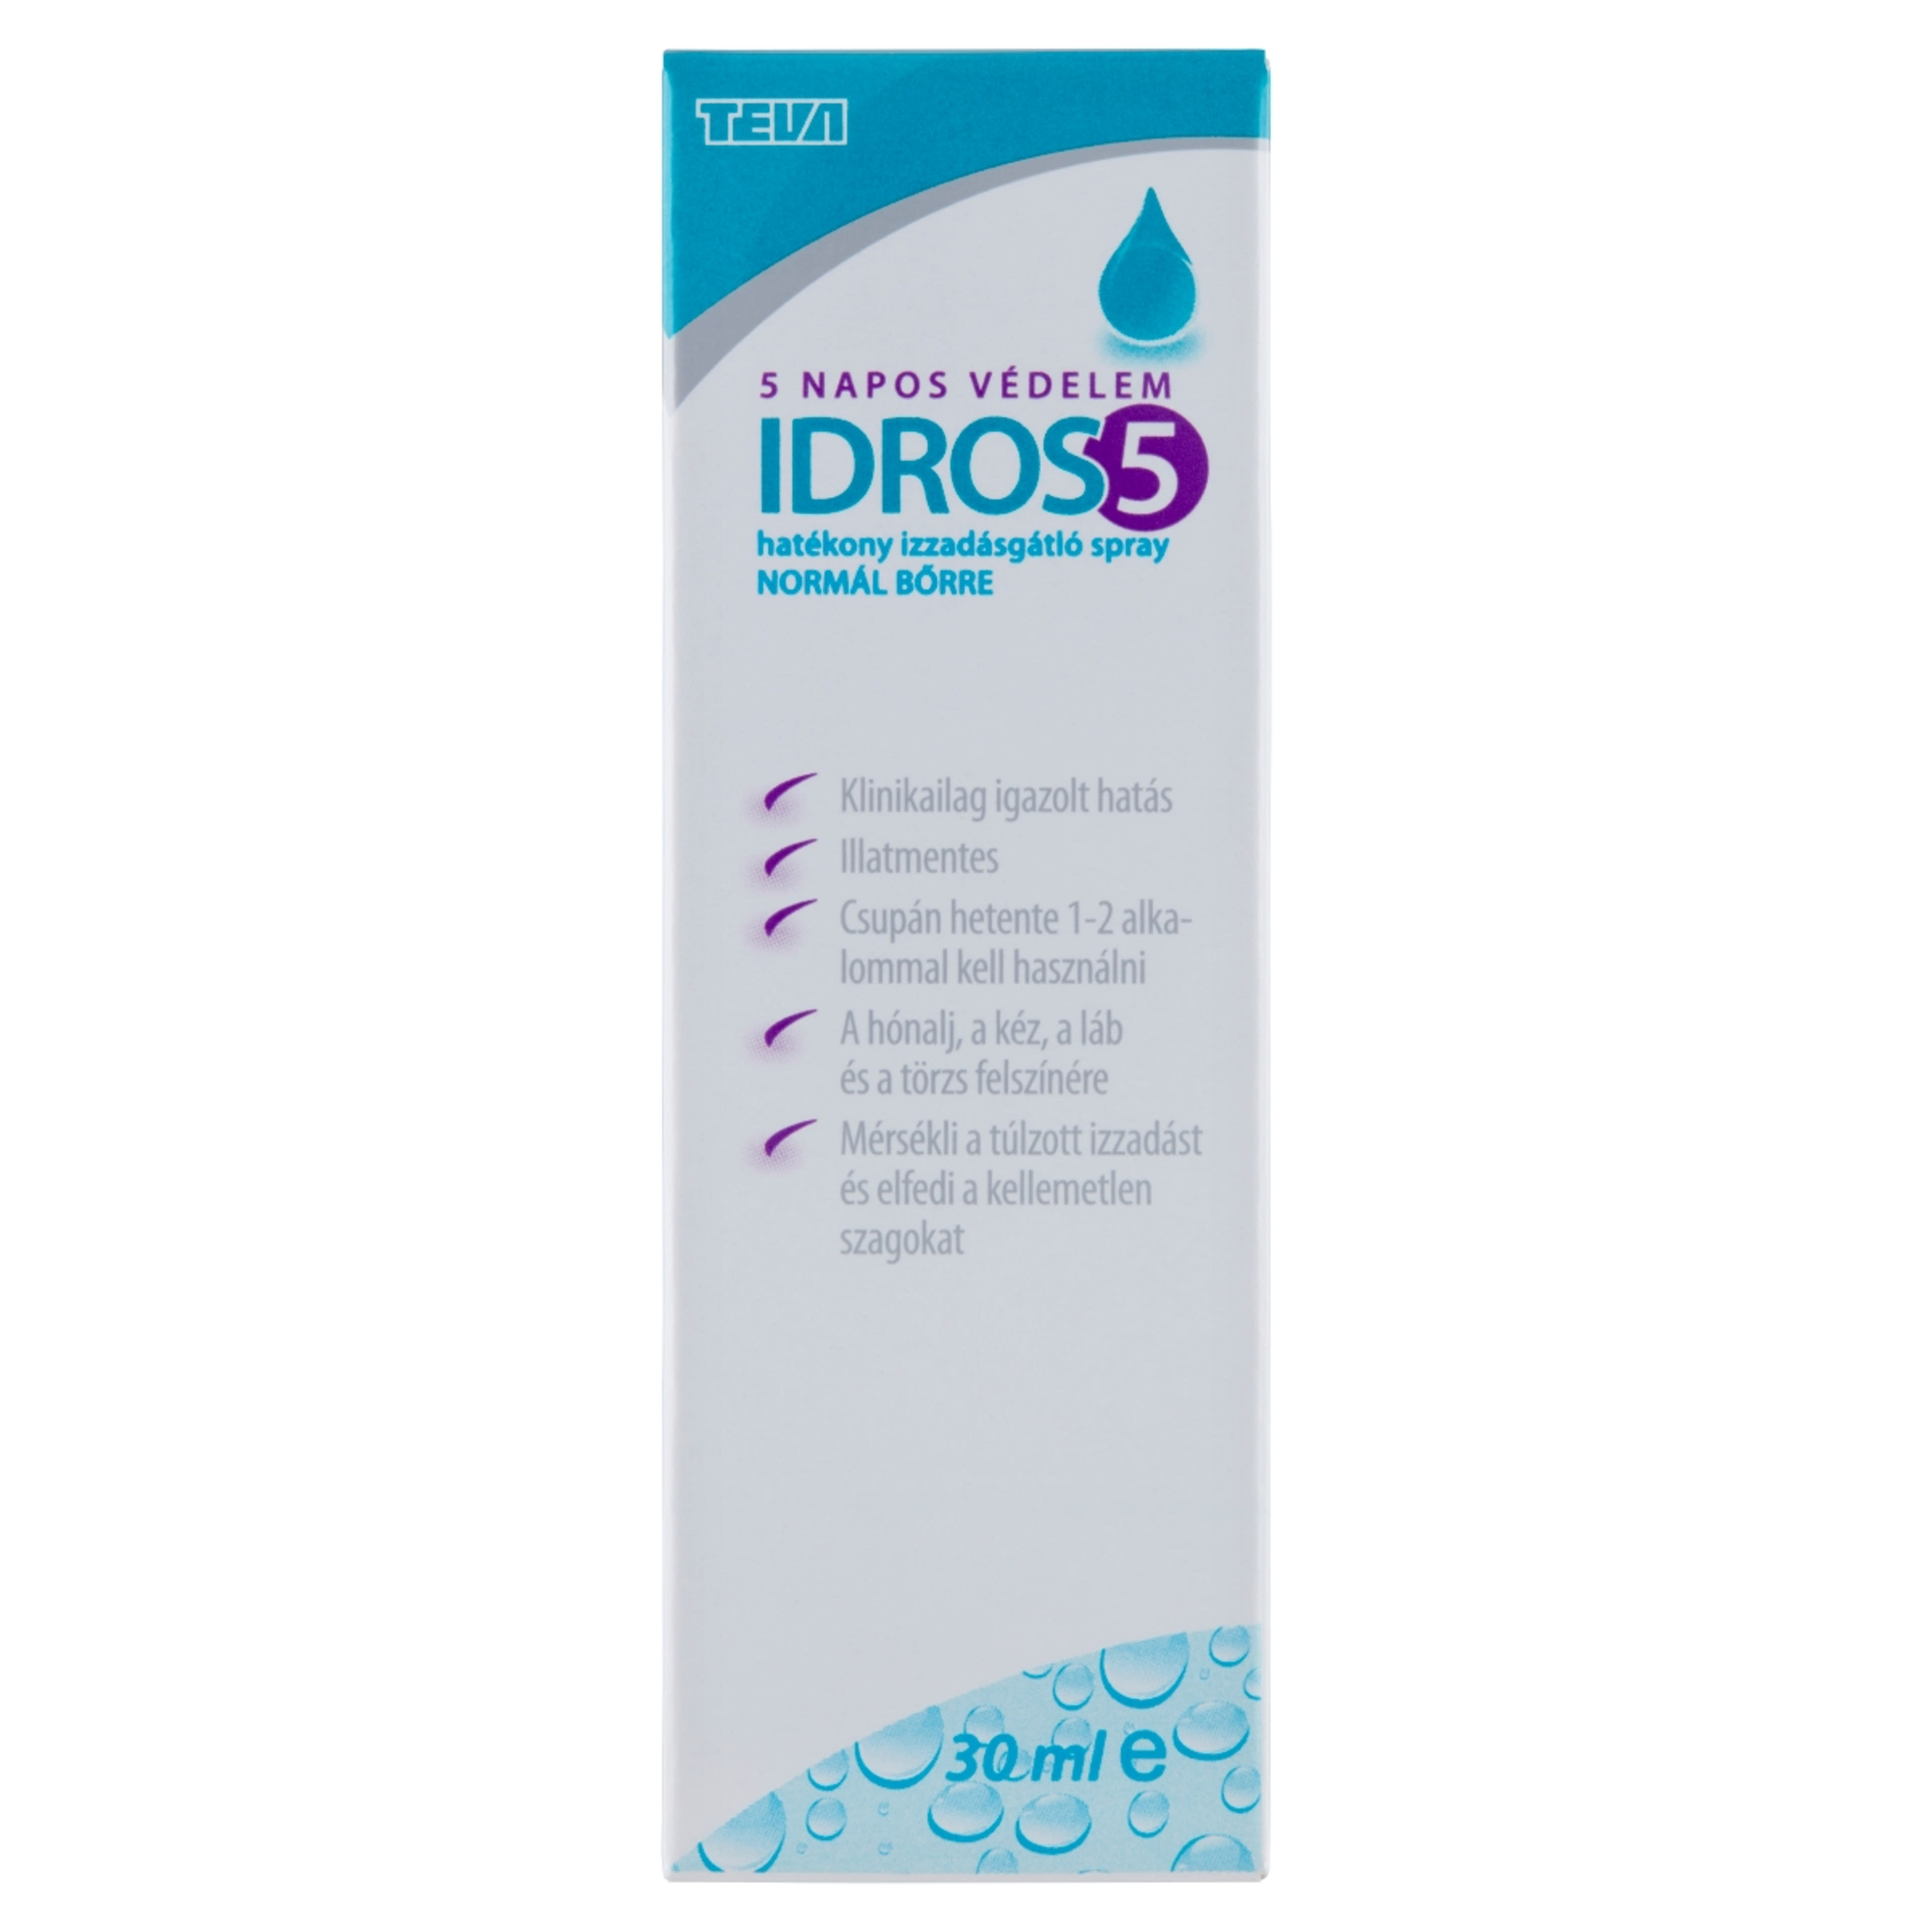 Idros5 izzadságátló spray - 30 ml-1